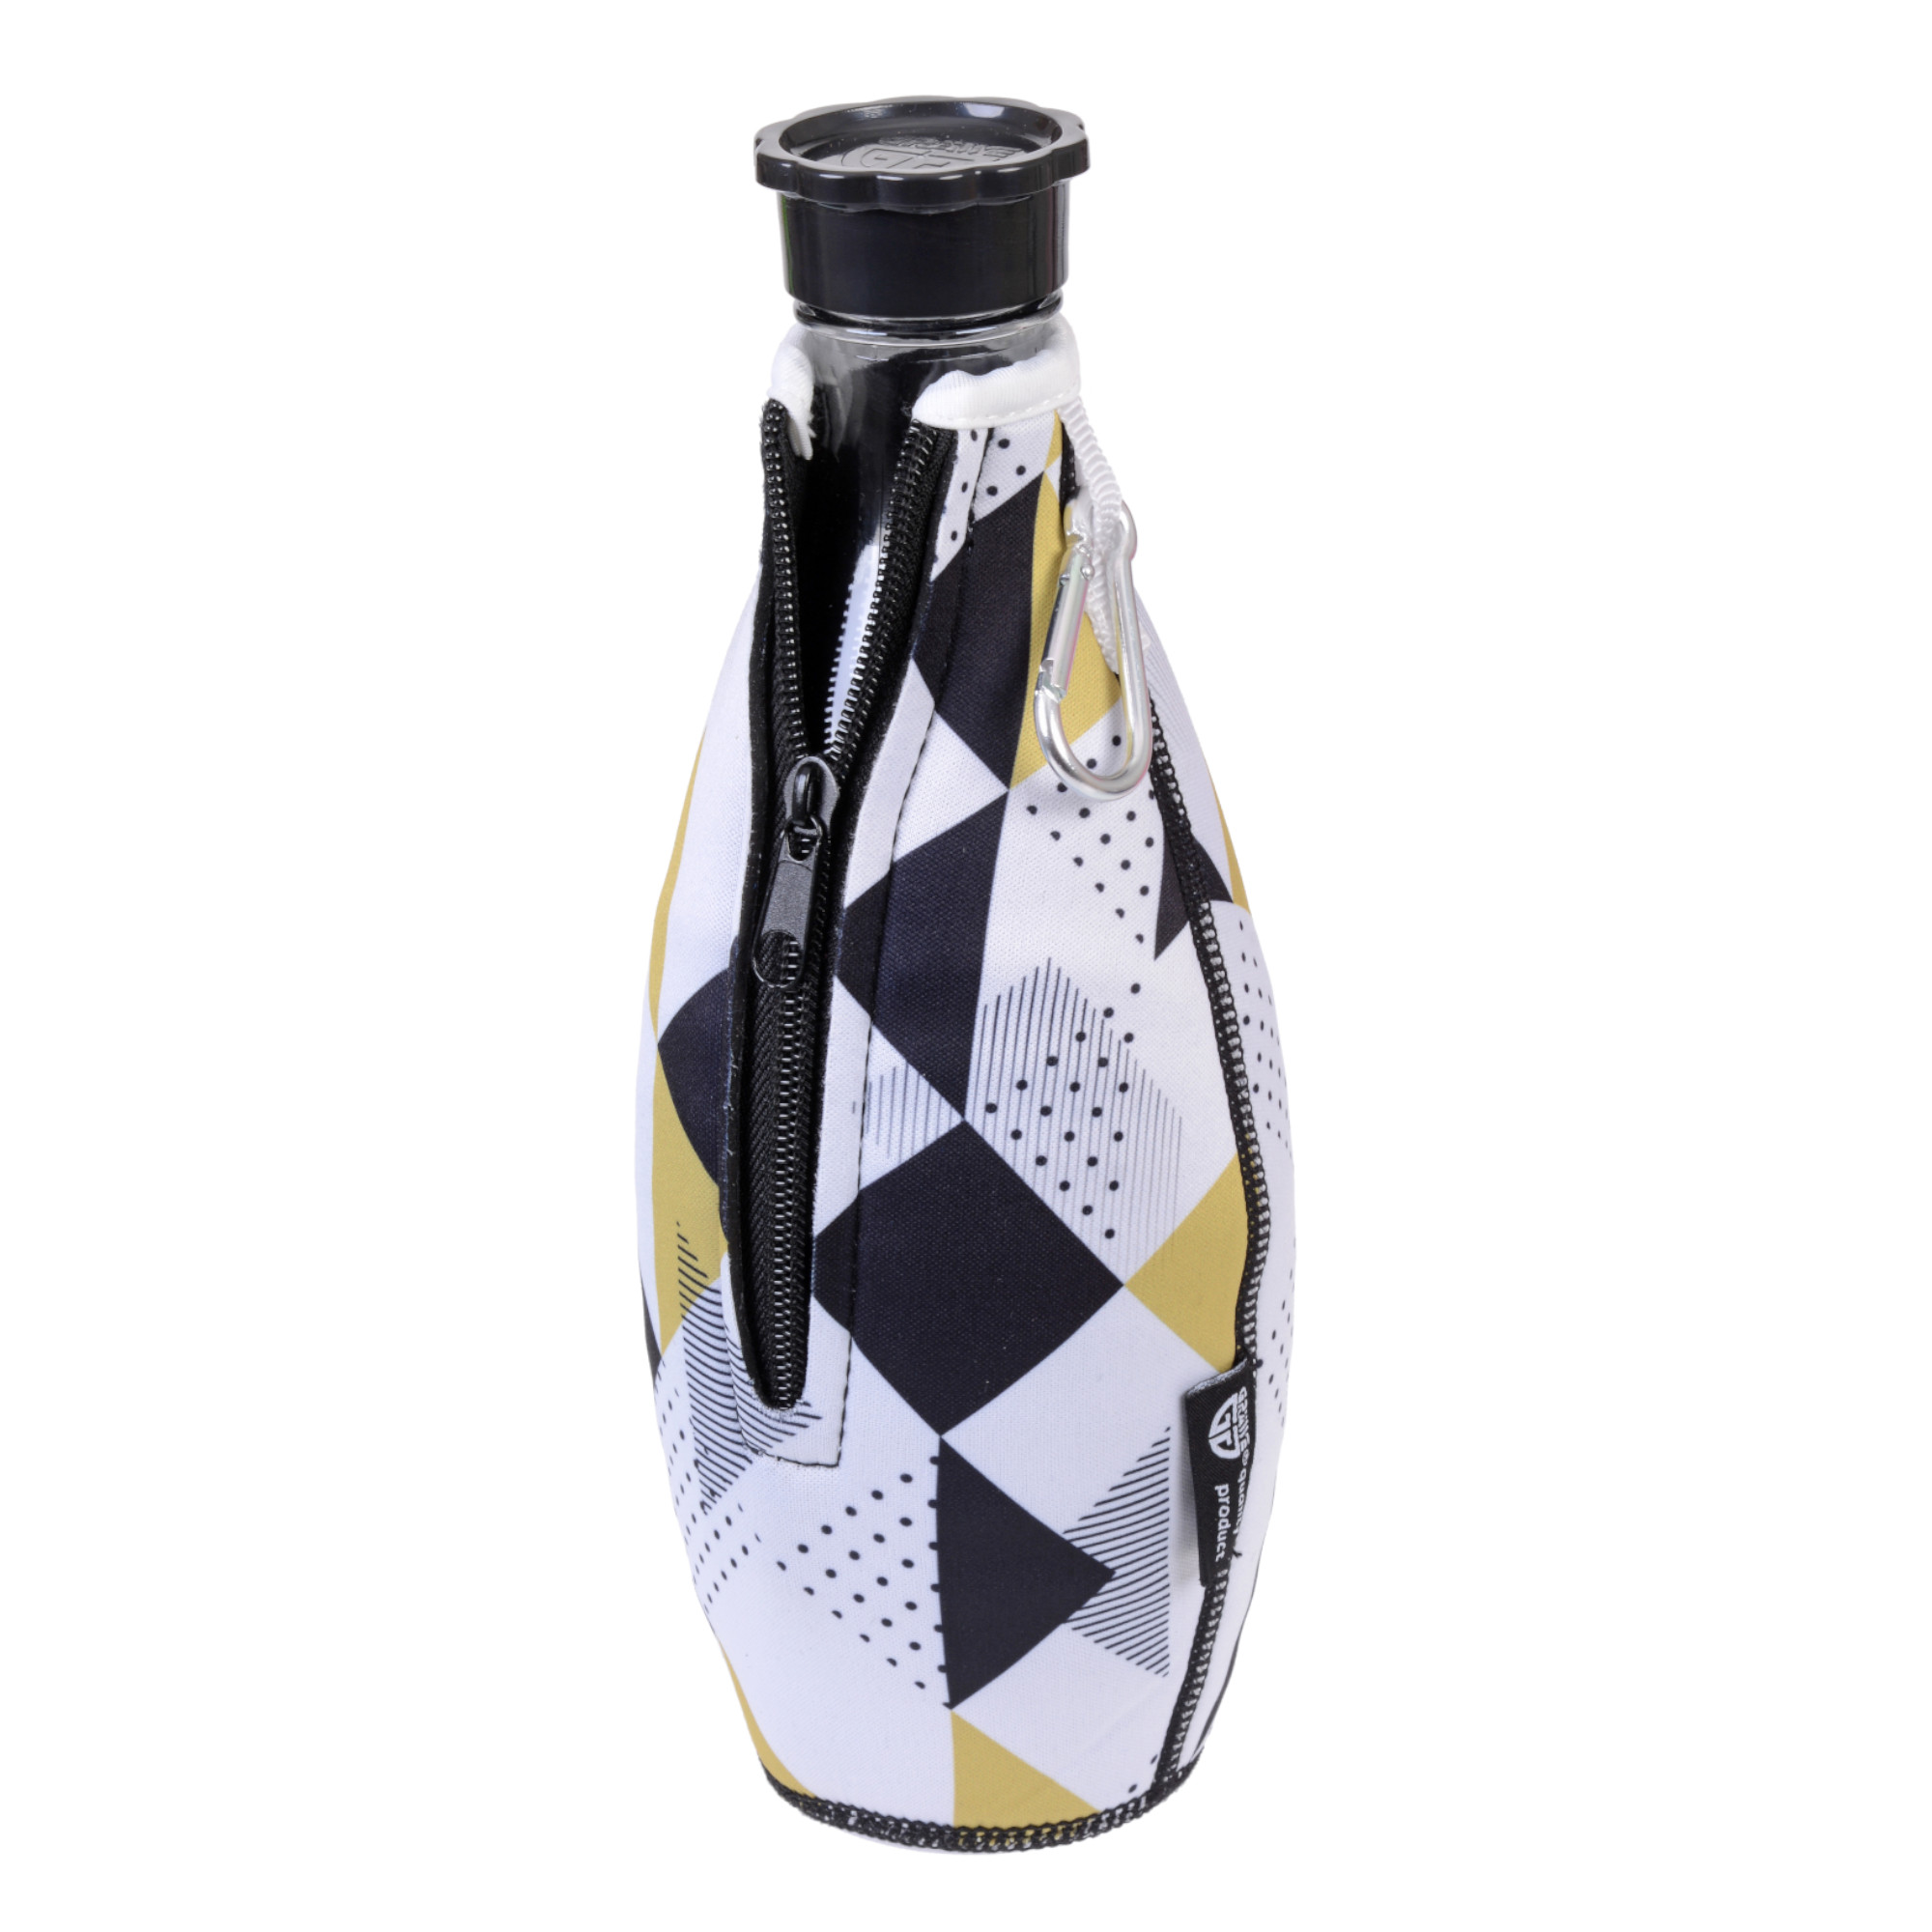 Flaschenhülle für Sodastream-Glasflaschen, weiß/schwarz/beige